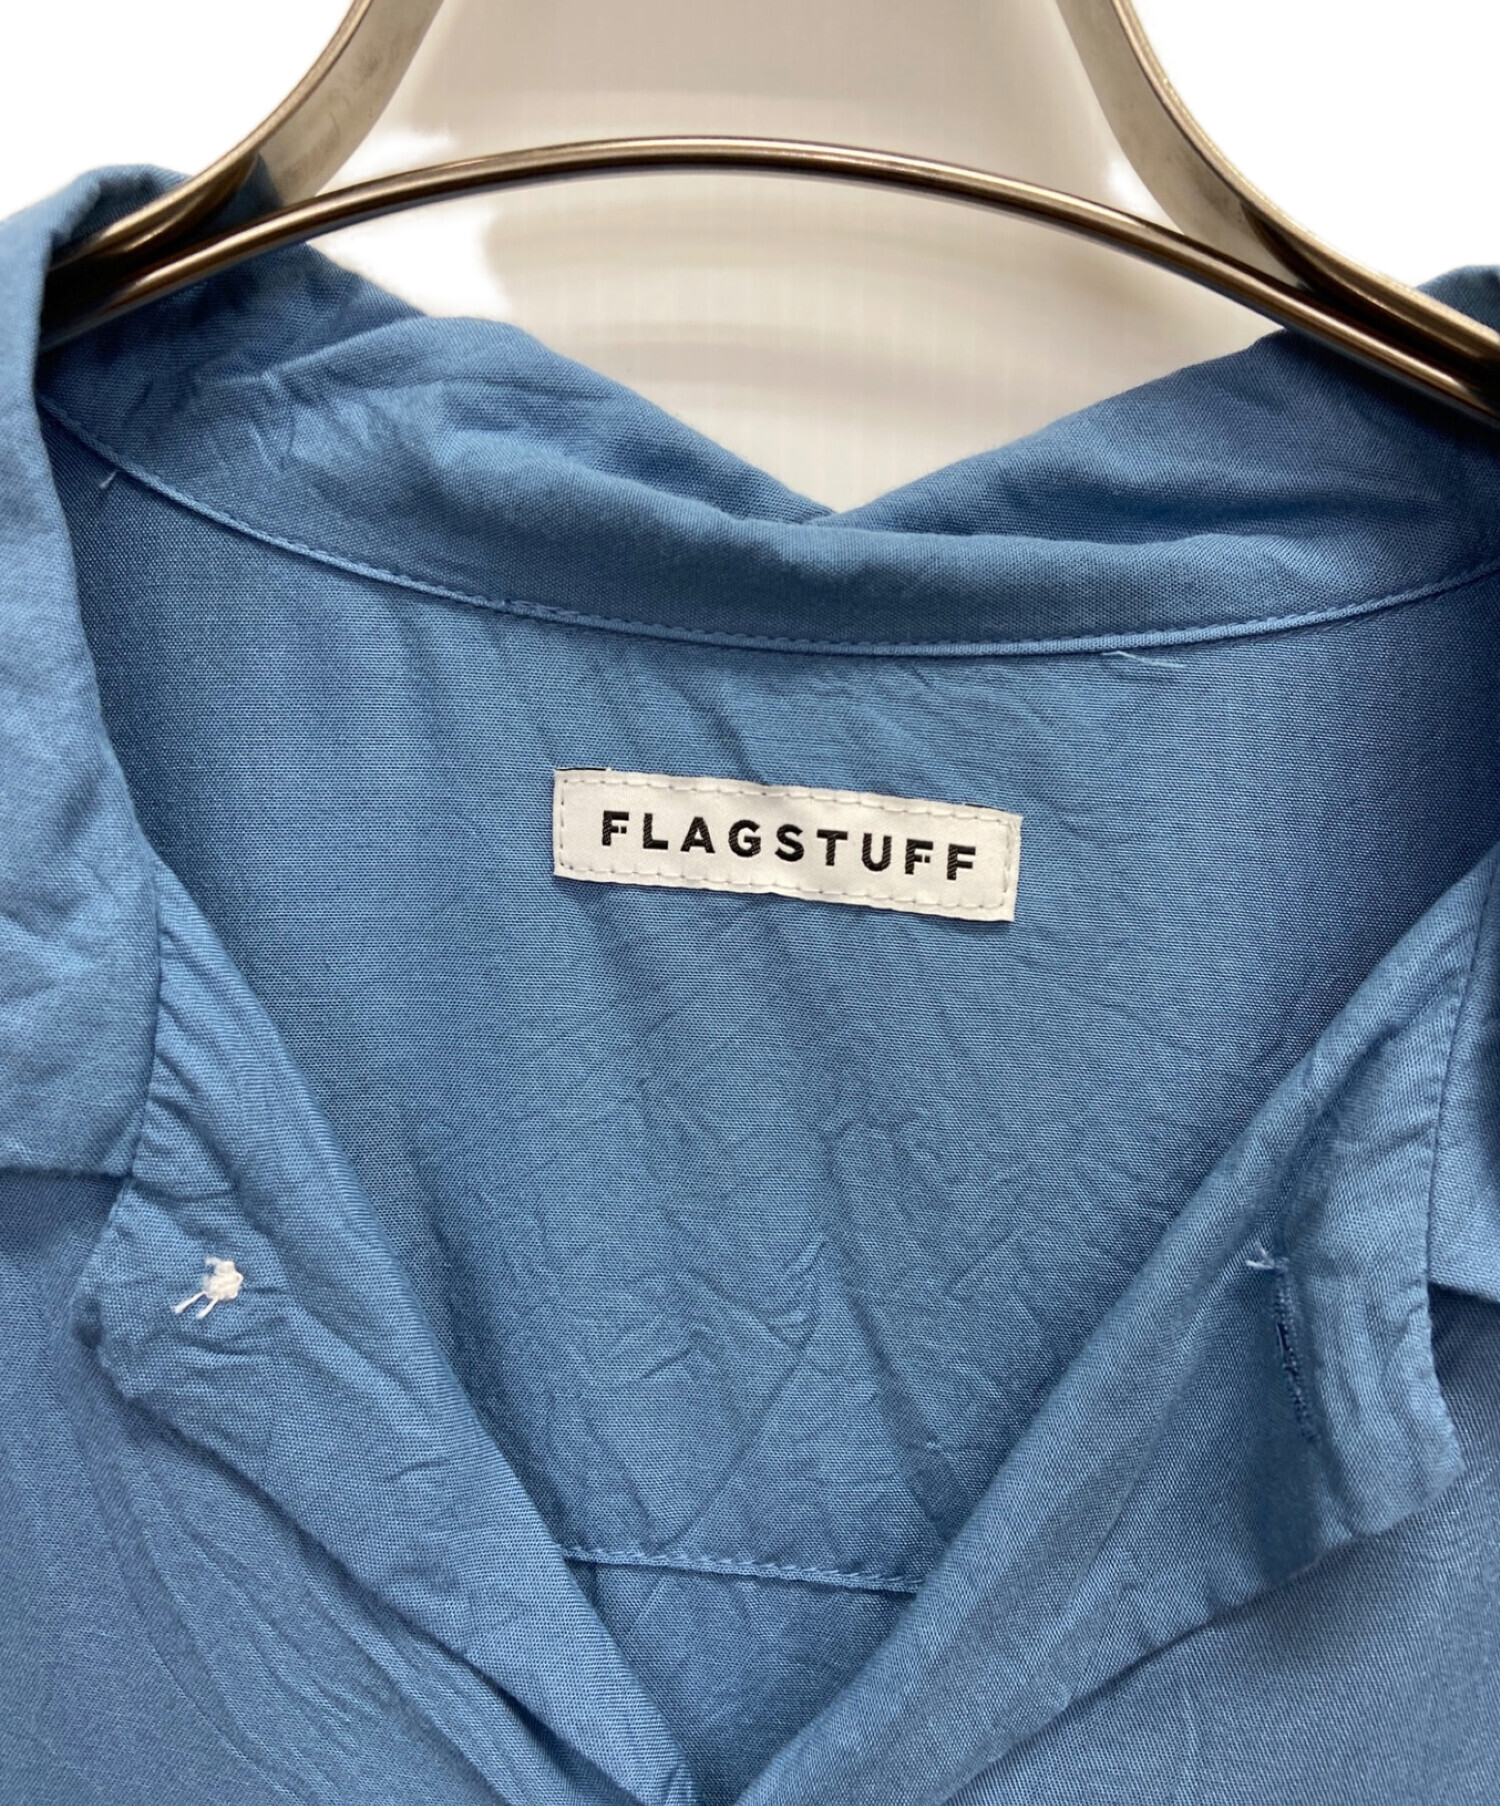 flagstuff (フラグスタッフ) オープンカラーシャツ スカイブルー サイズ:L